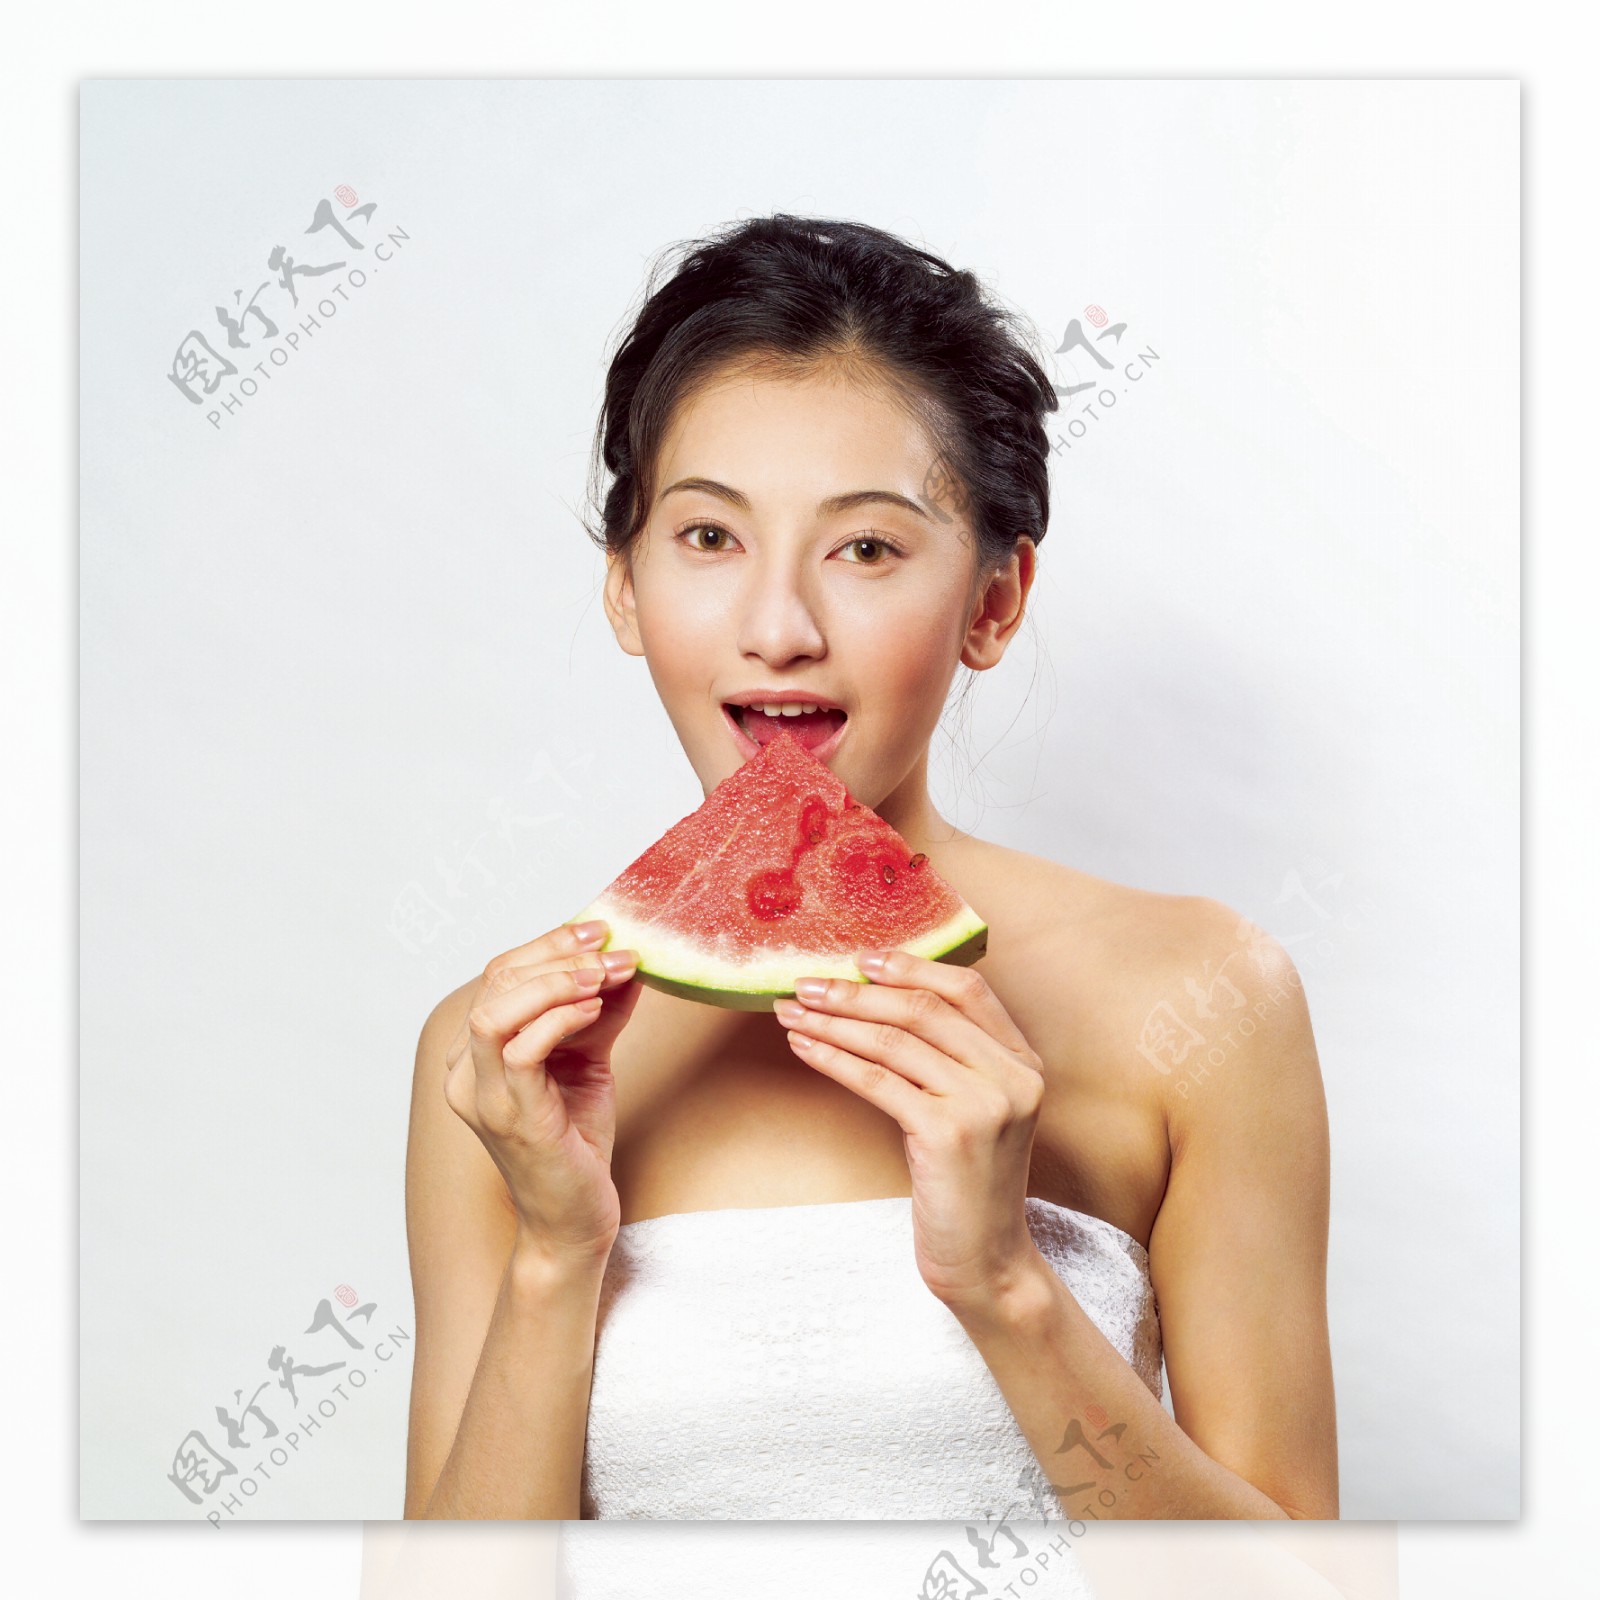 吃西瓜的美女图片